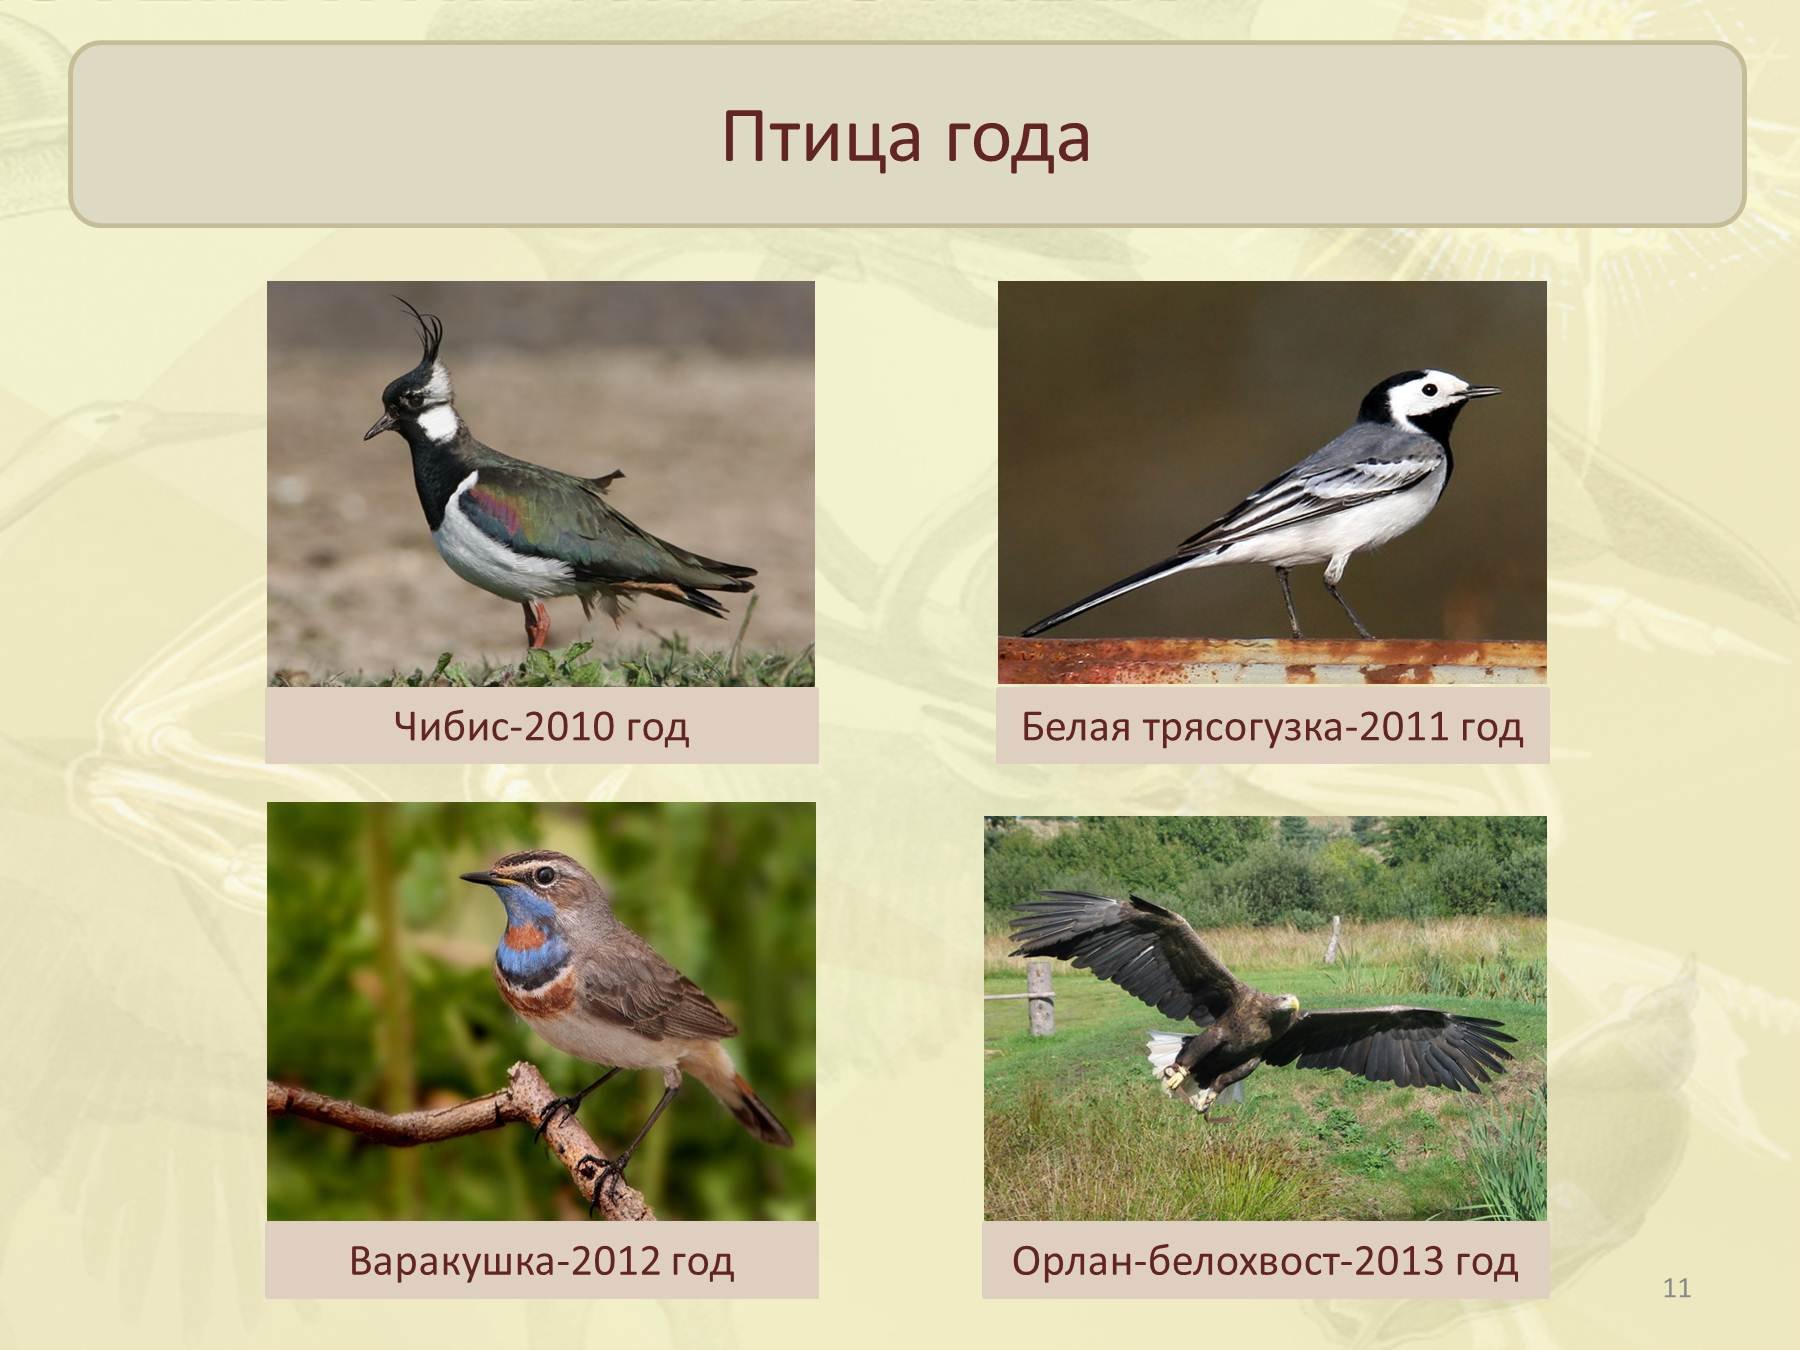 Чибис птица описание. Чибис Перелетная птица. Пигалица птица. Птица года 2011 год.